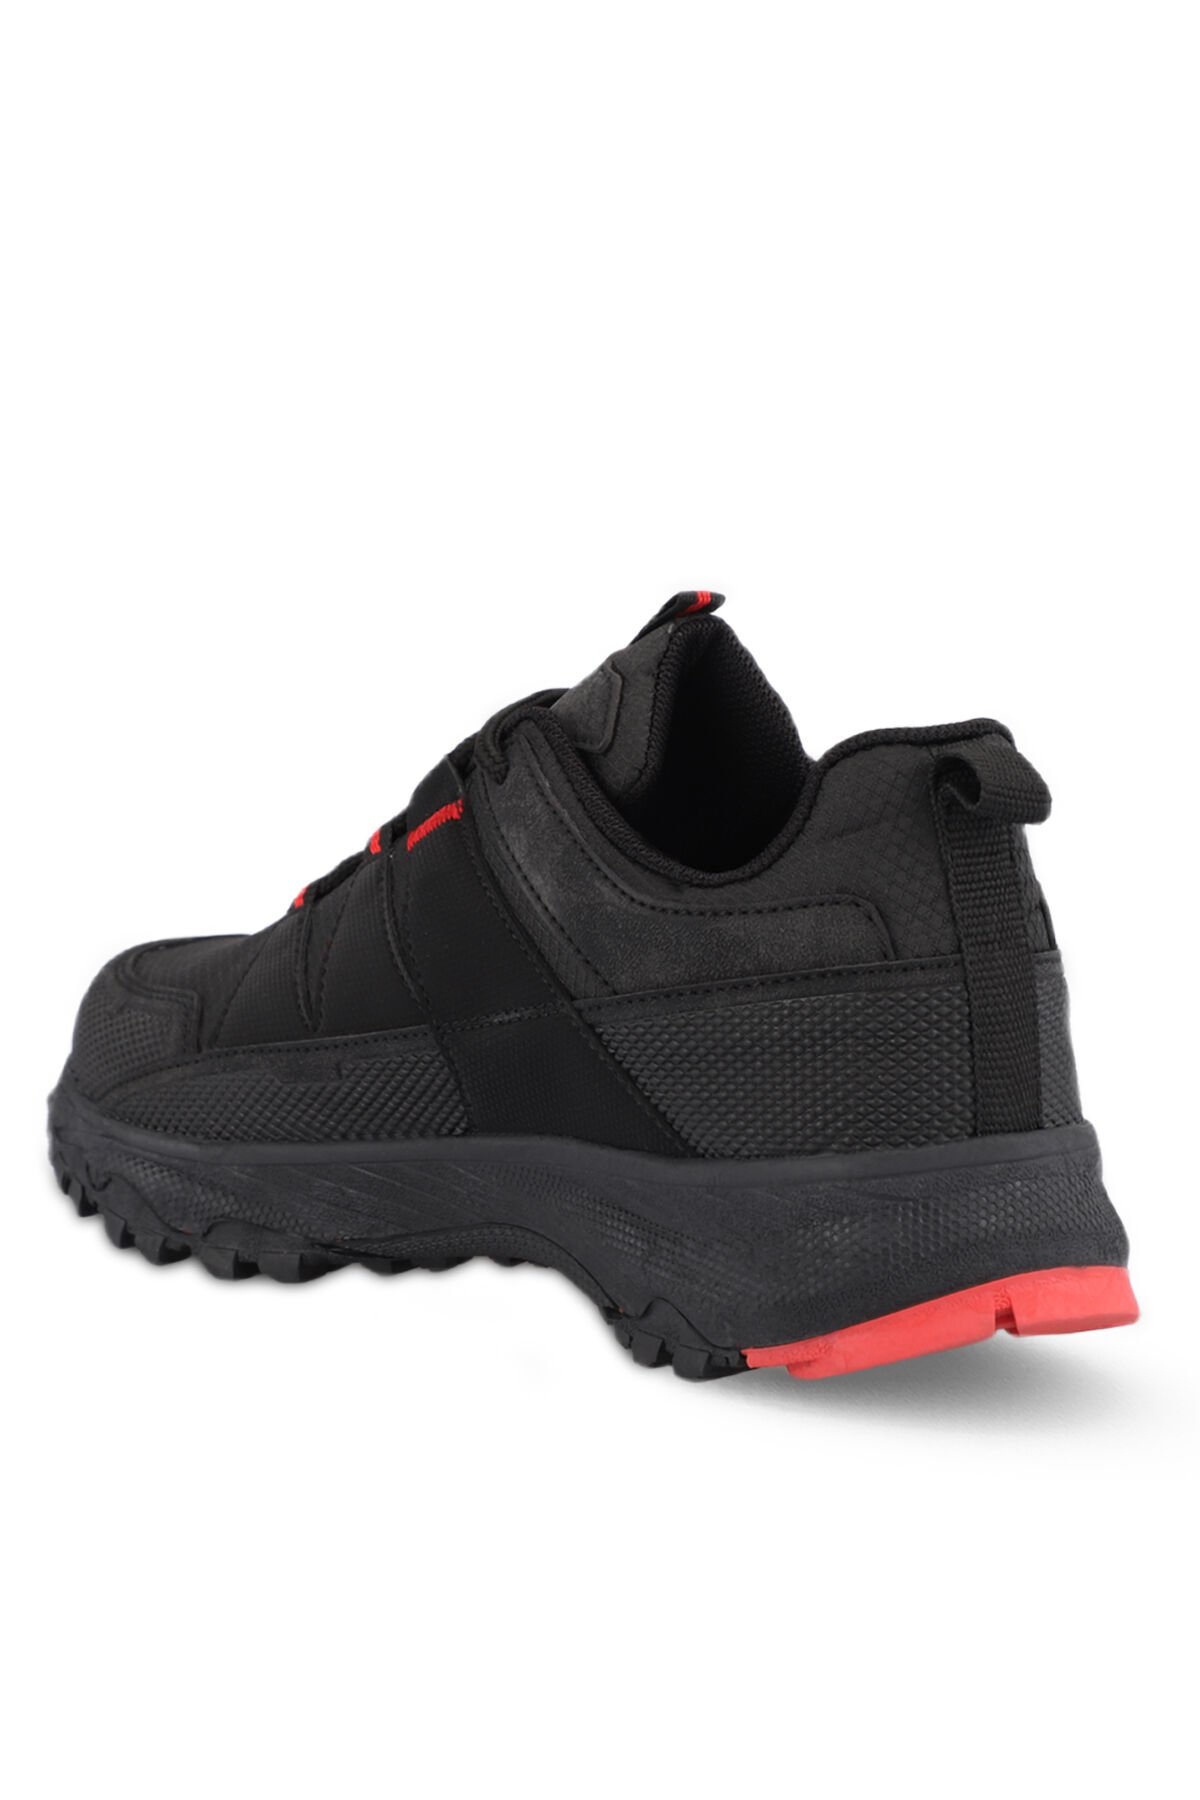 GRIFFIN I Erkek Outdoor Ayakkabı Siyah / Kırmızı - Thumbnail